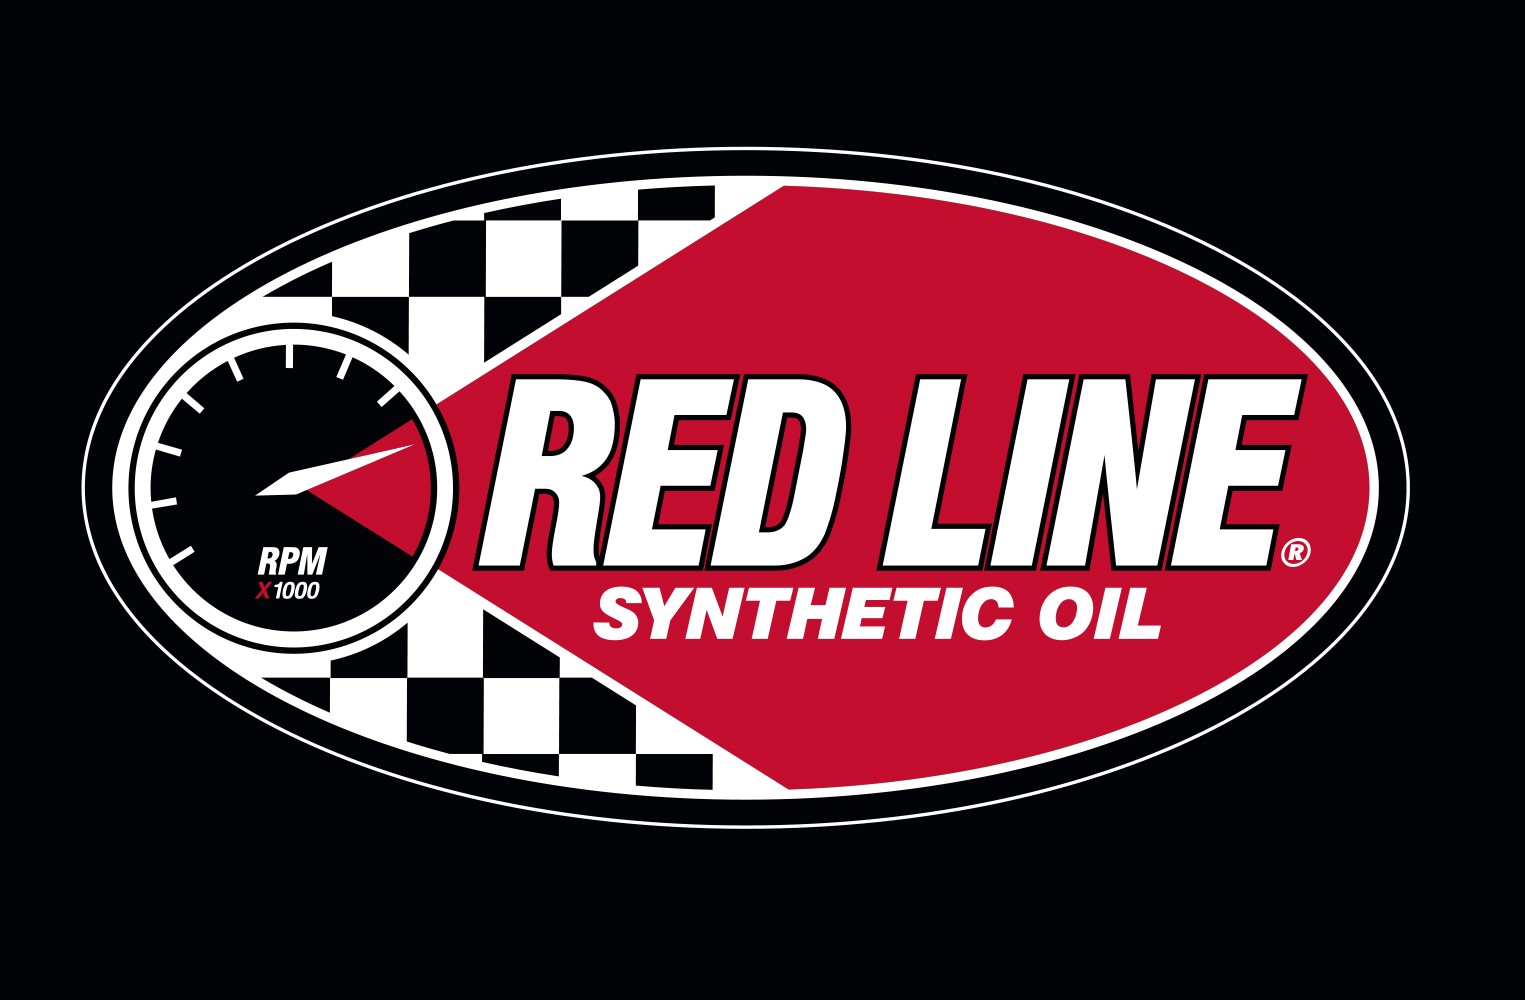 Red Line Oil logo